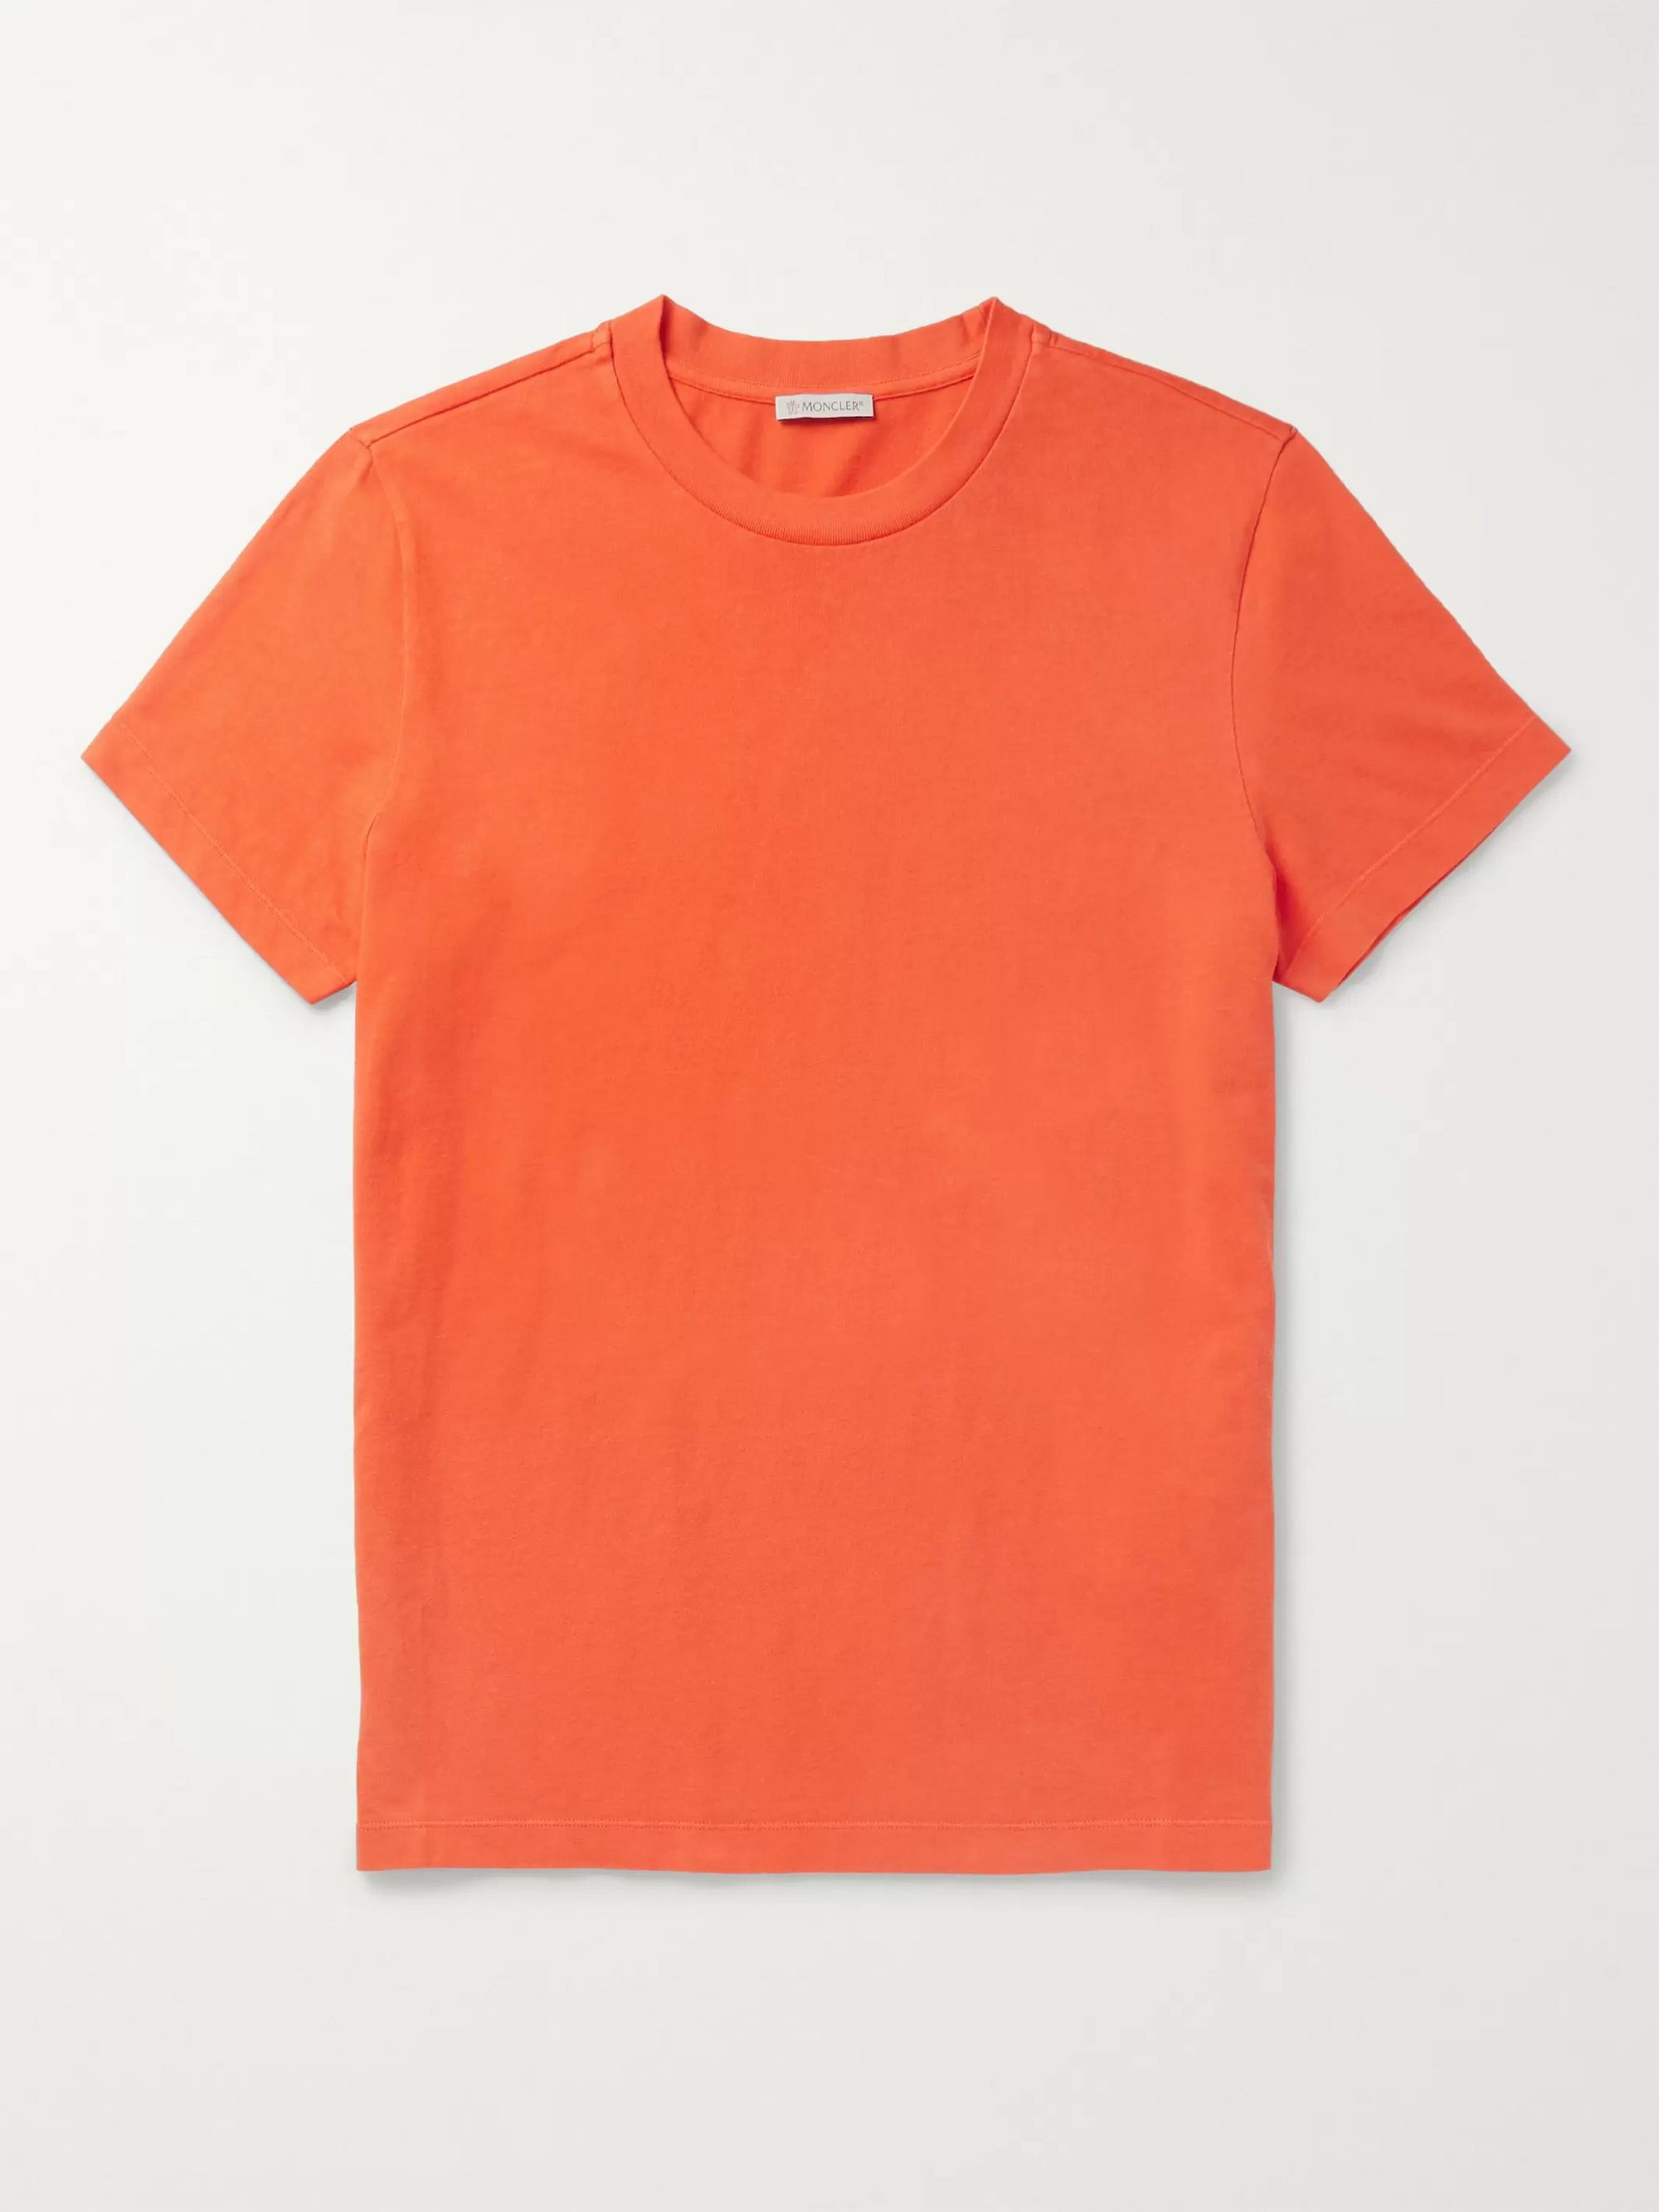 orange moncler shirt